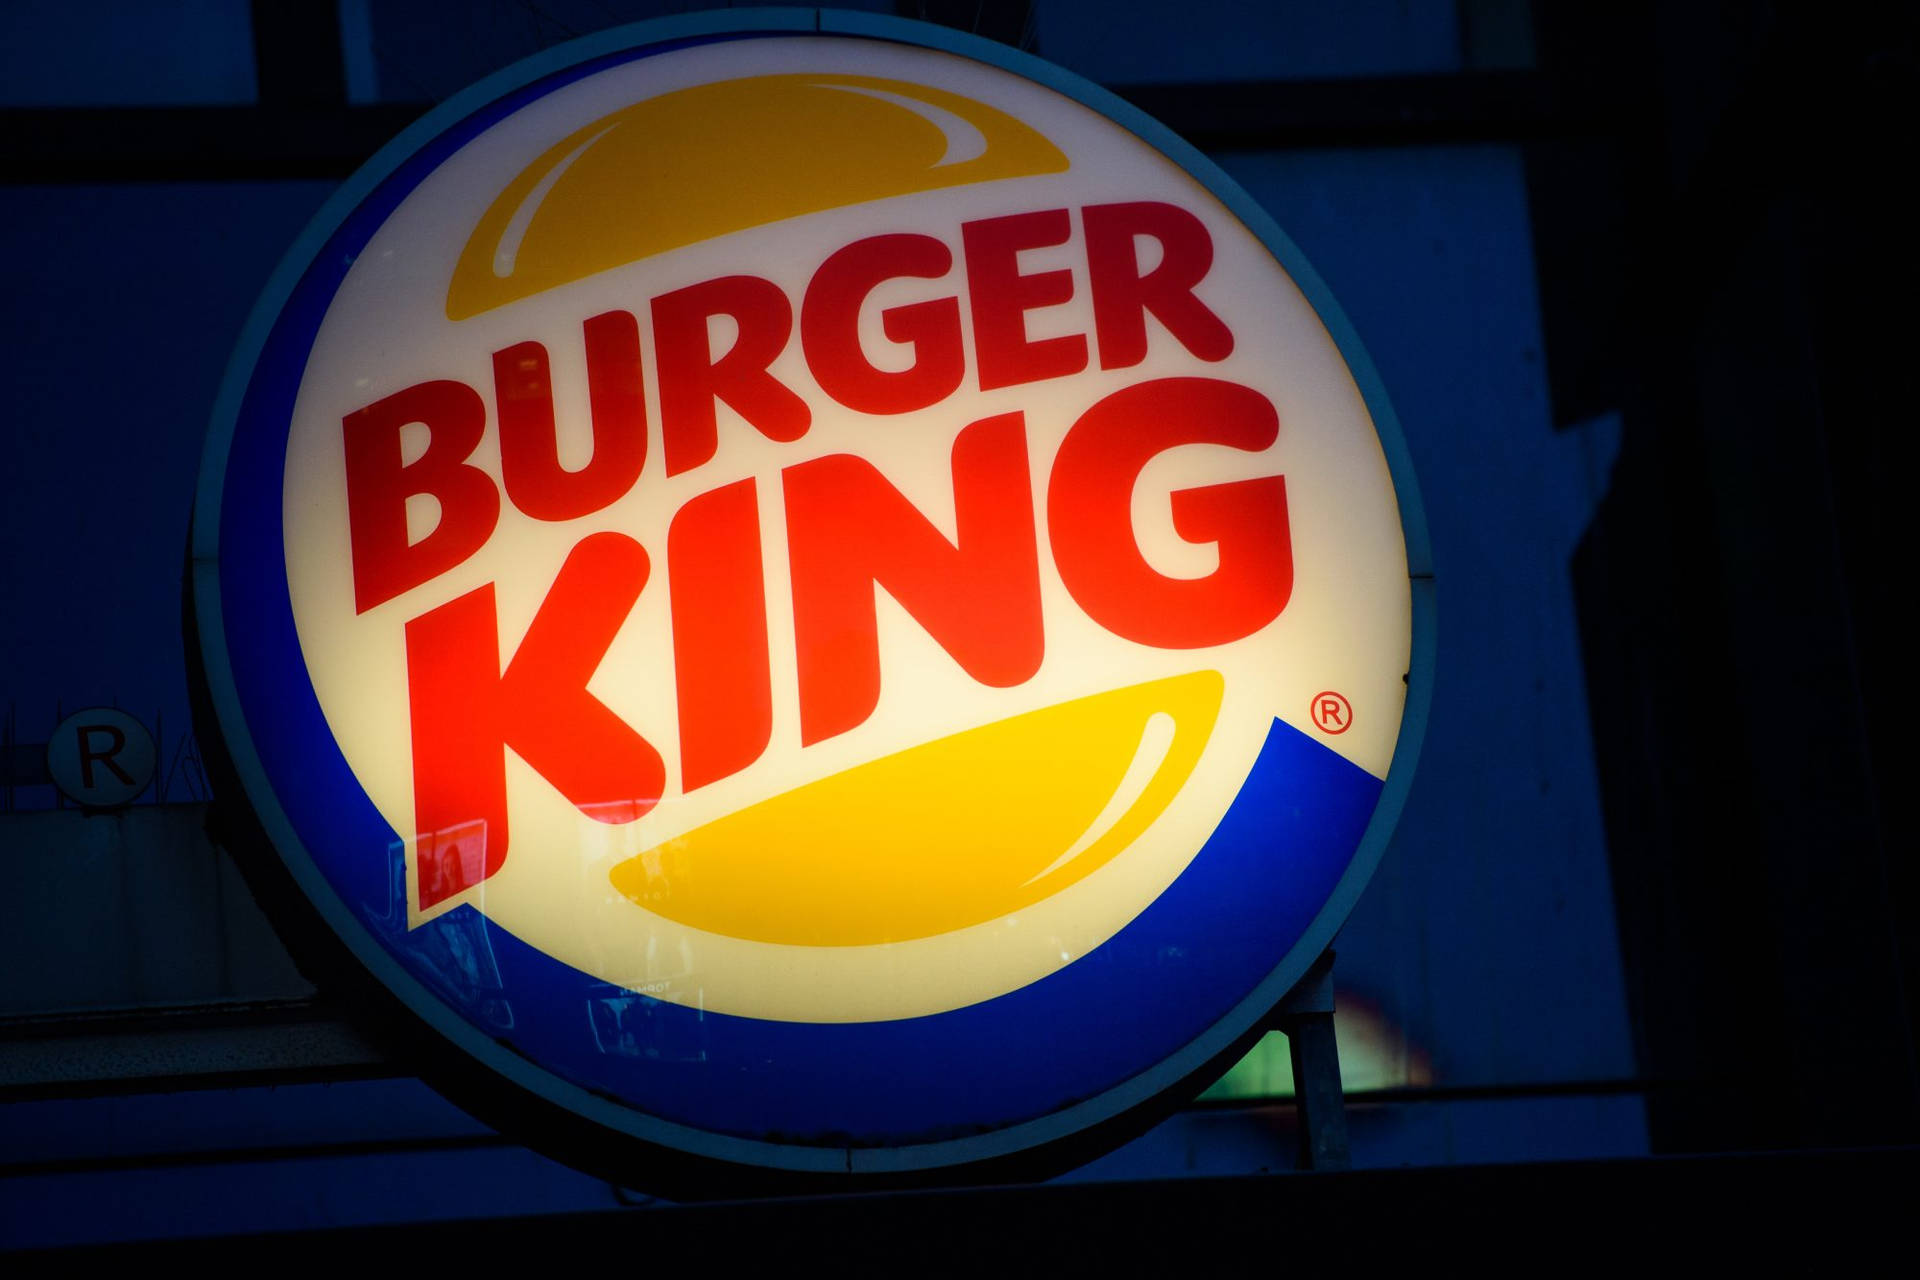 Luminosoletrero De Burger King. Fondo de pantalla